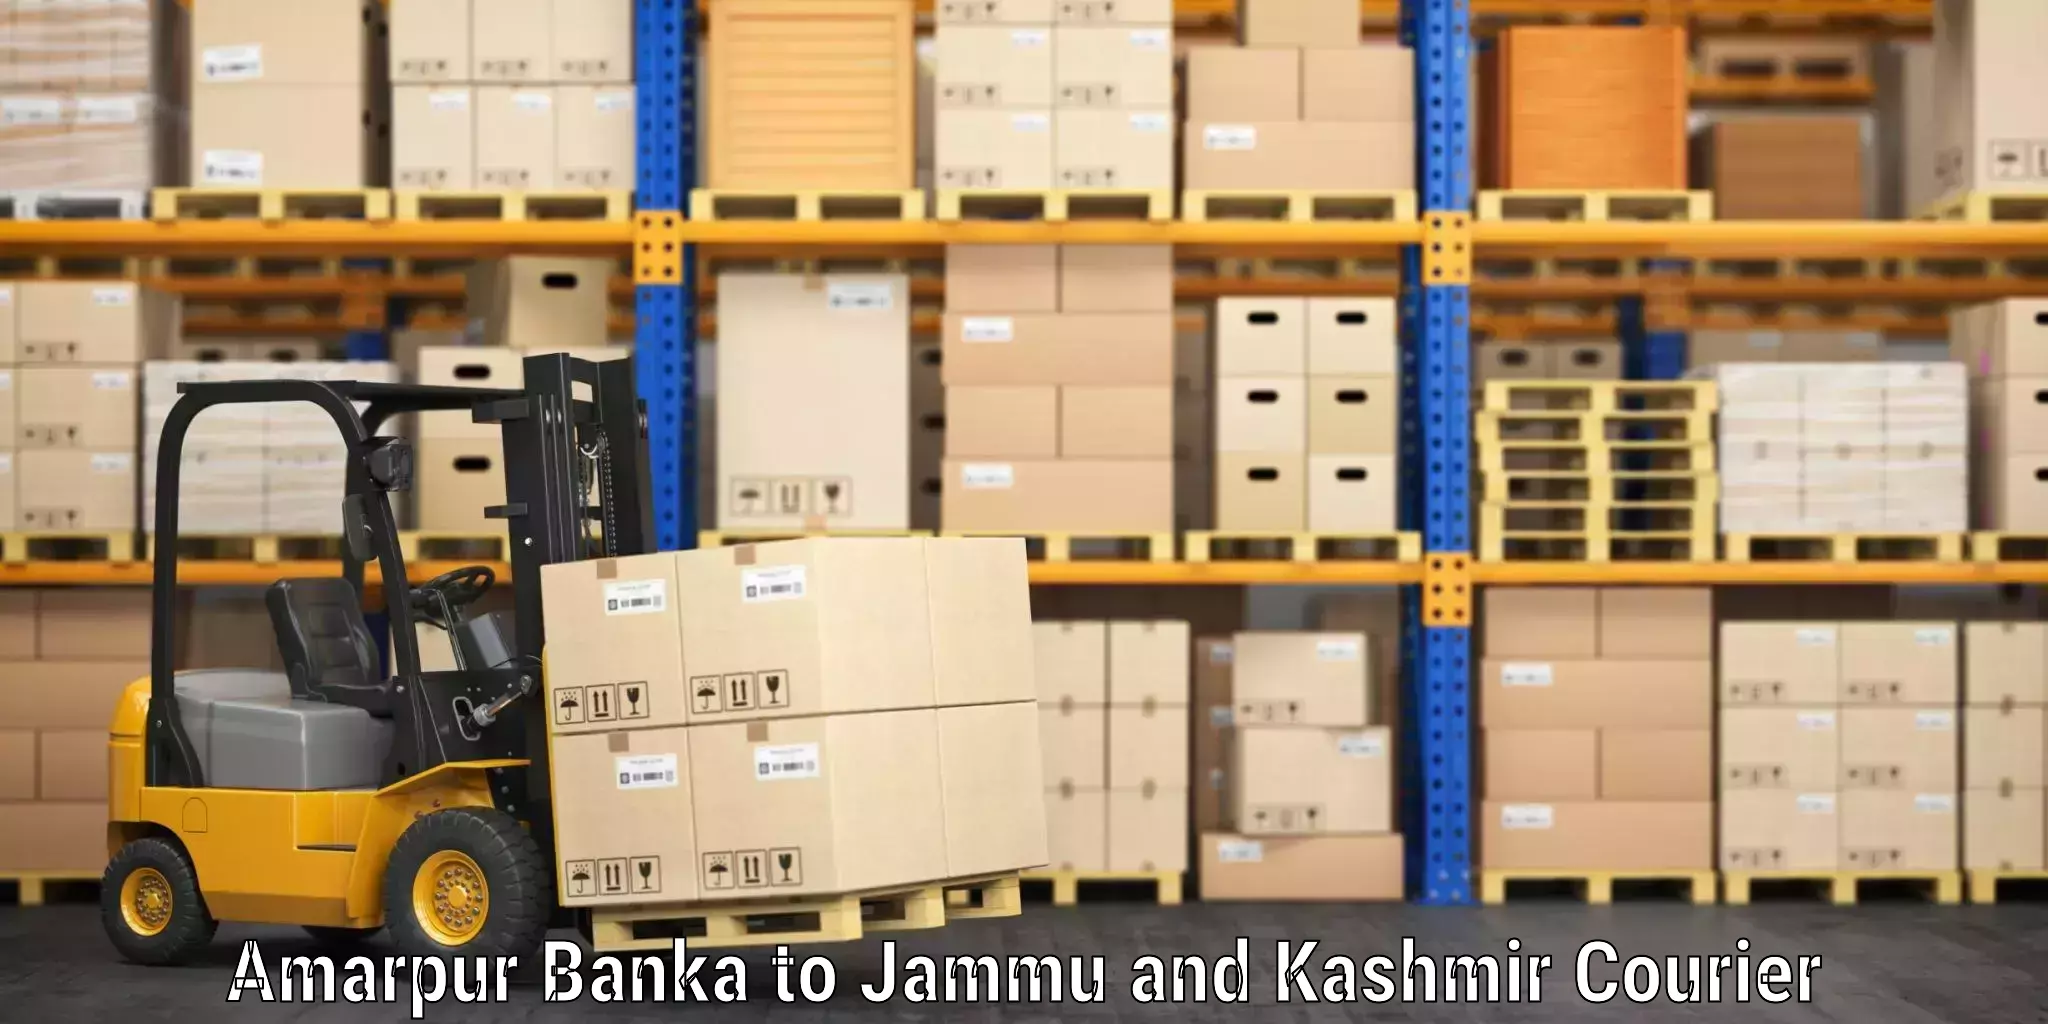 Baggage delivery technology Amarpur Banka to Nagrota